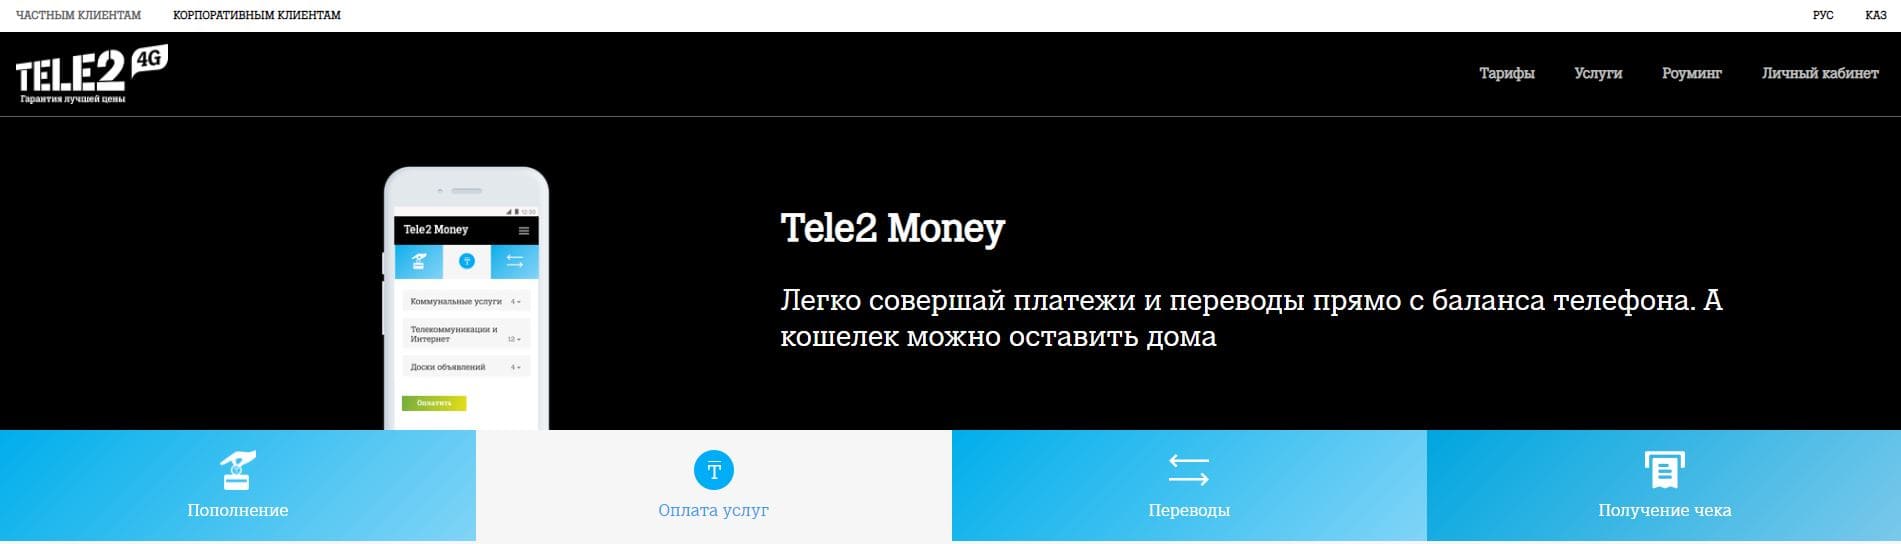 Money tele2 (money.tele2.kz)